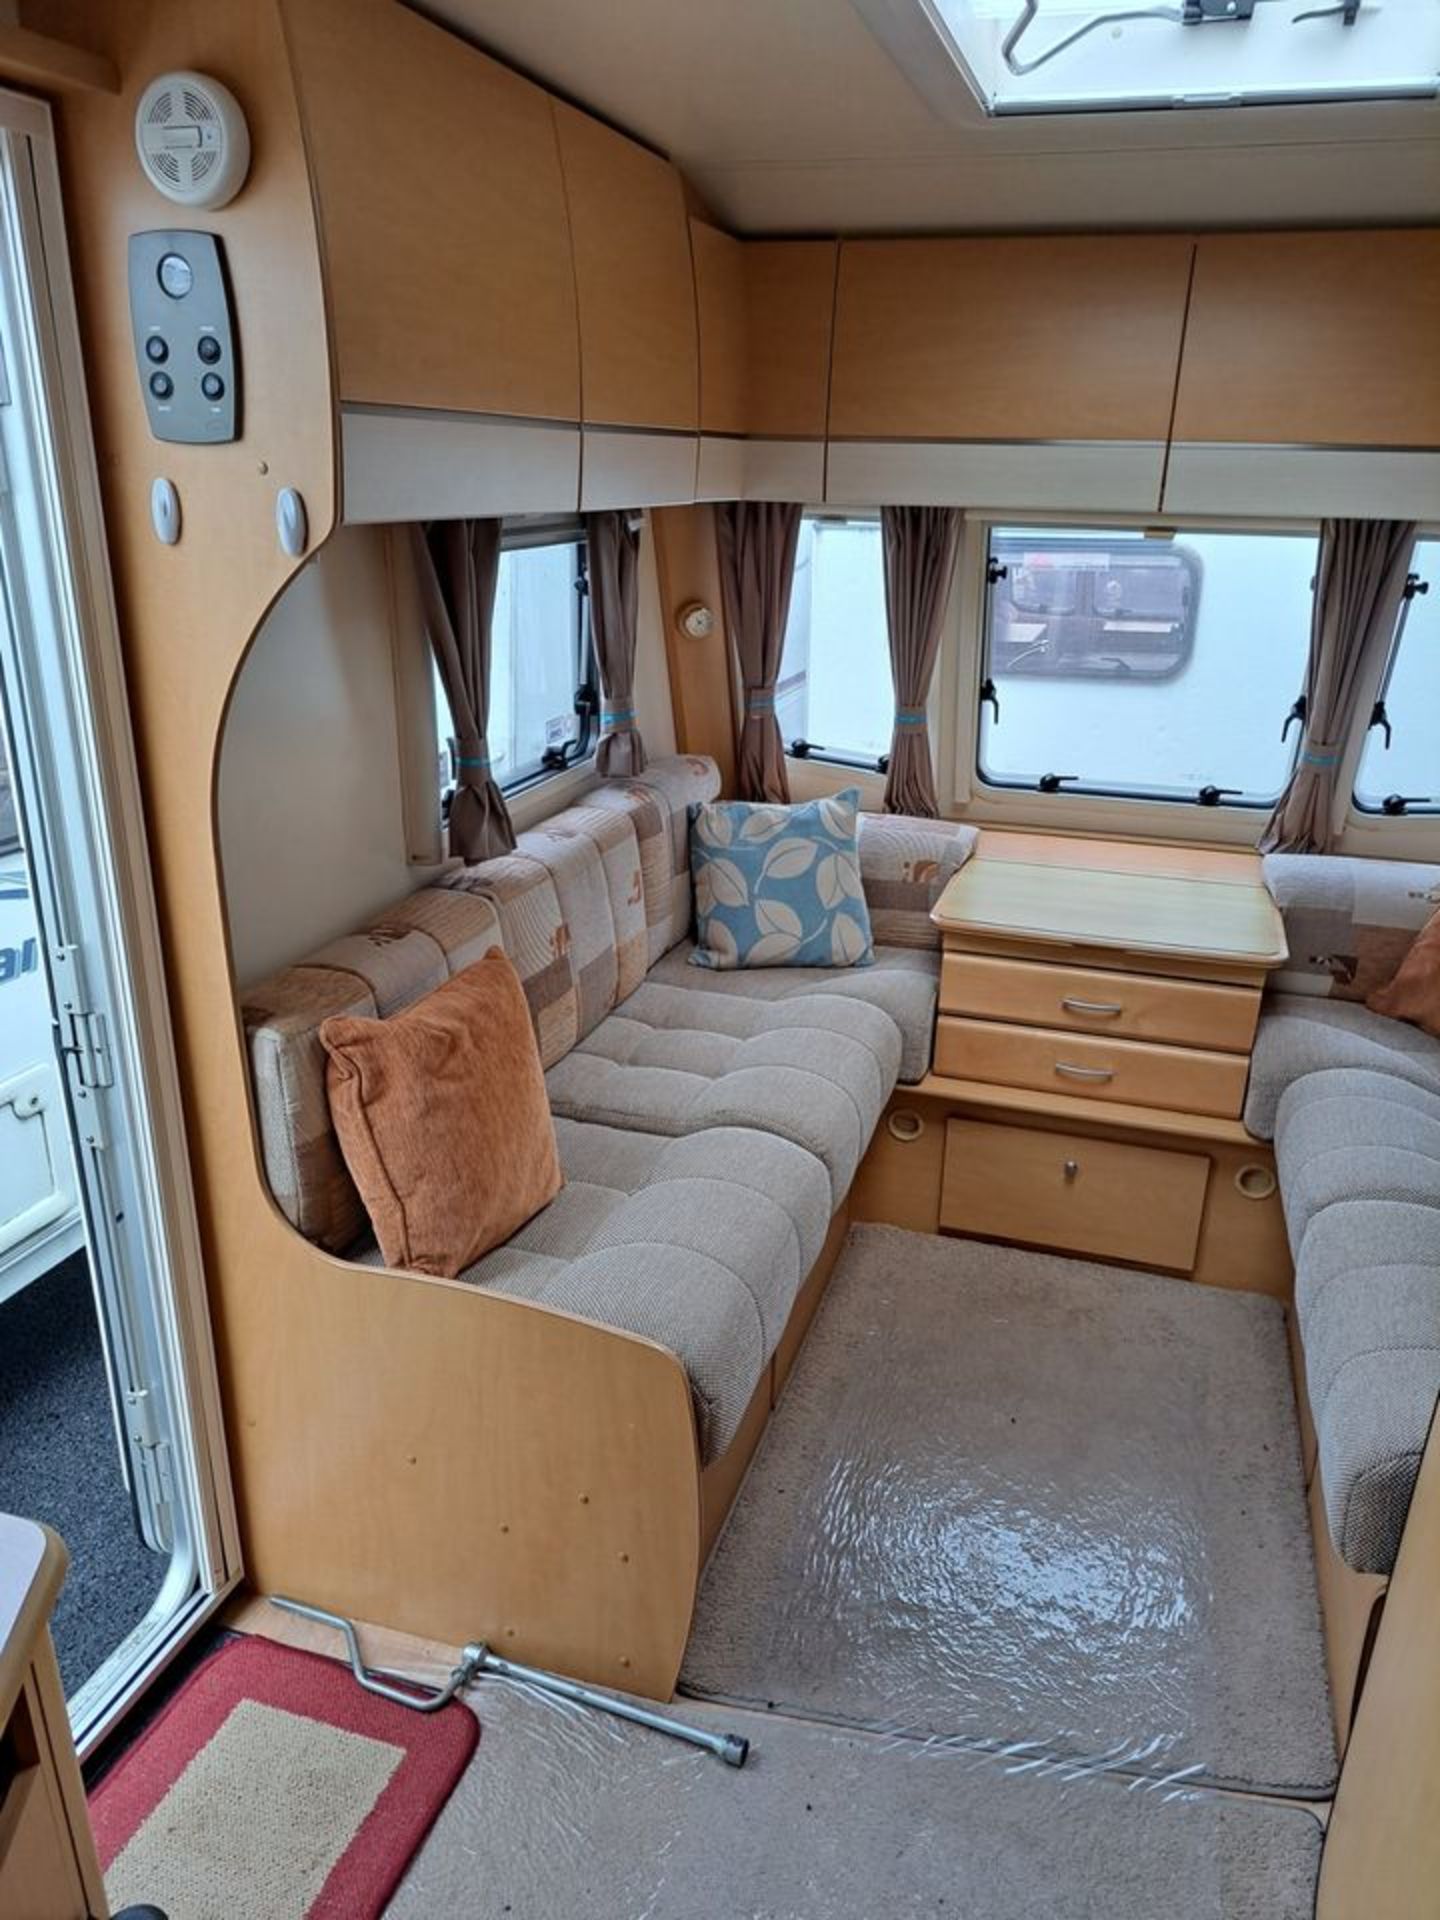 2010 Bailey Pegasus Olympus 534 Caravan in Excellent Condition - 4 Berth *NO VAT* - Image 8 of 18